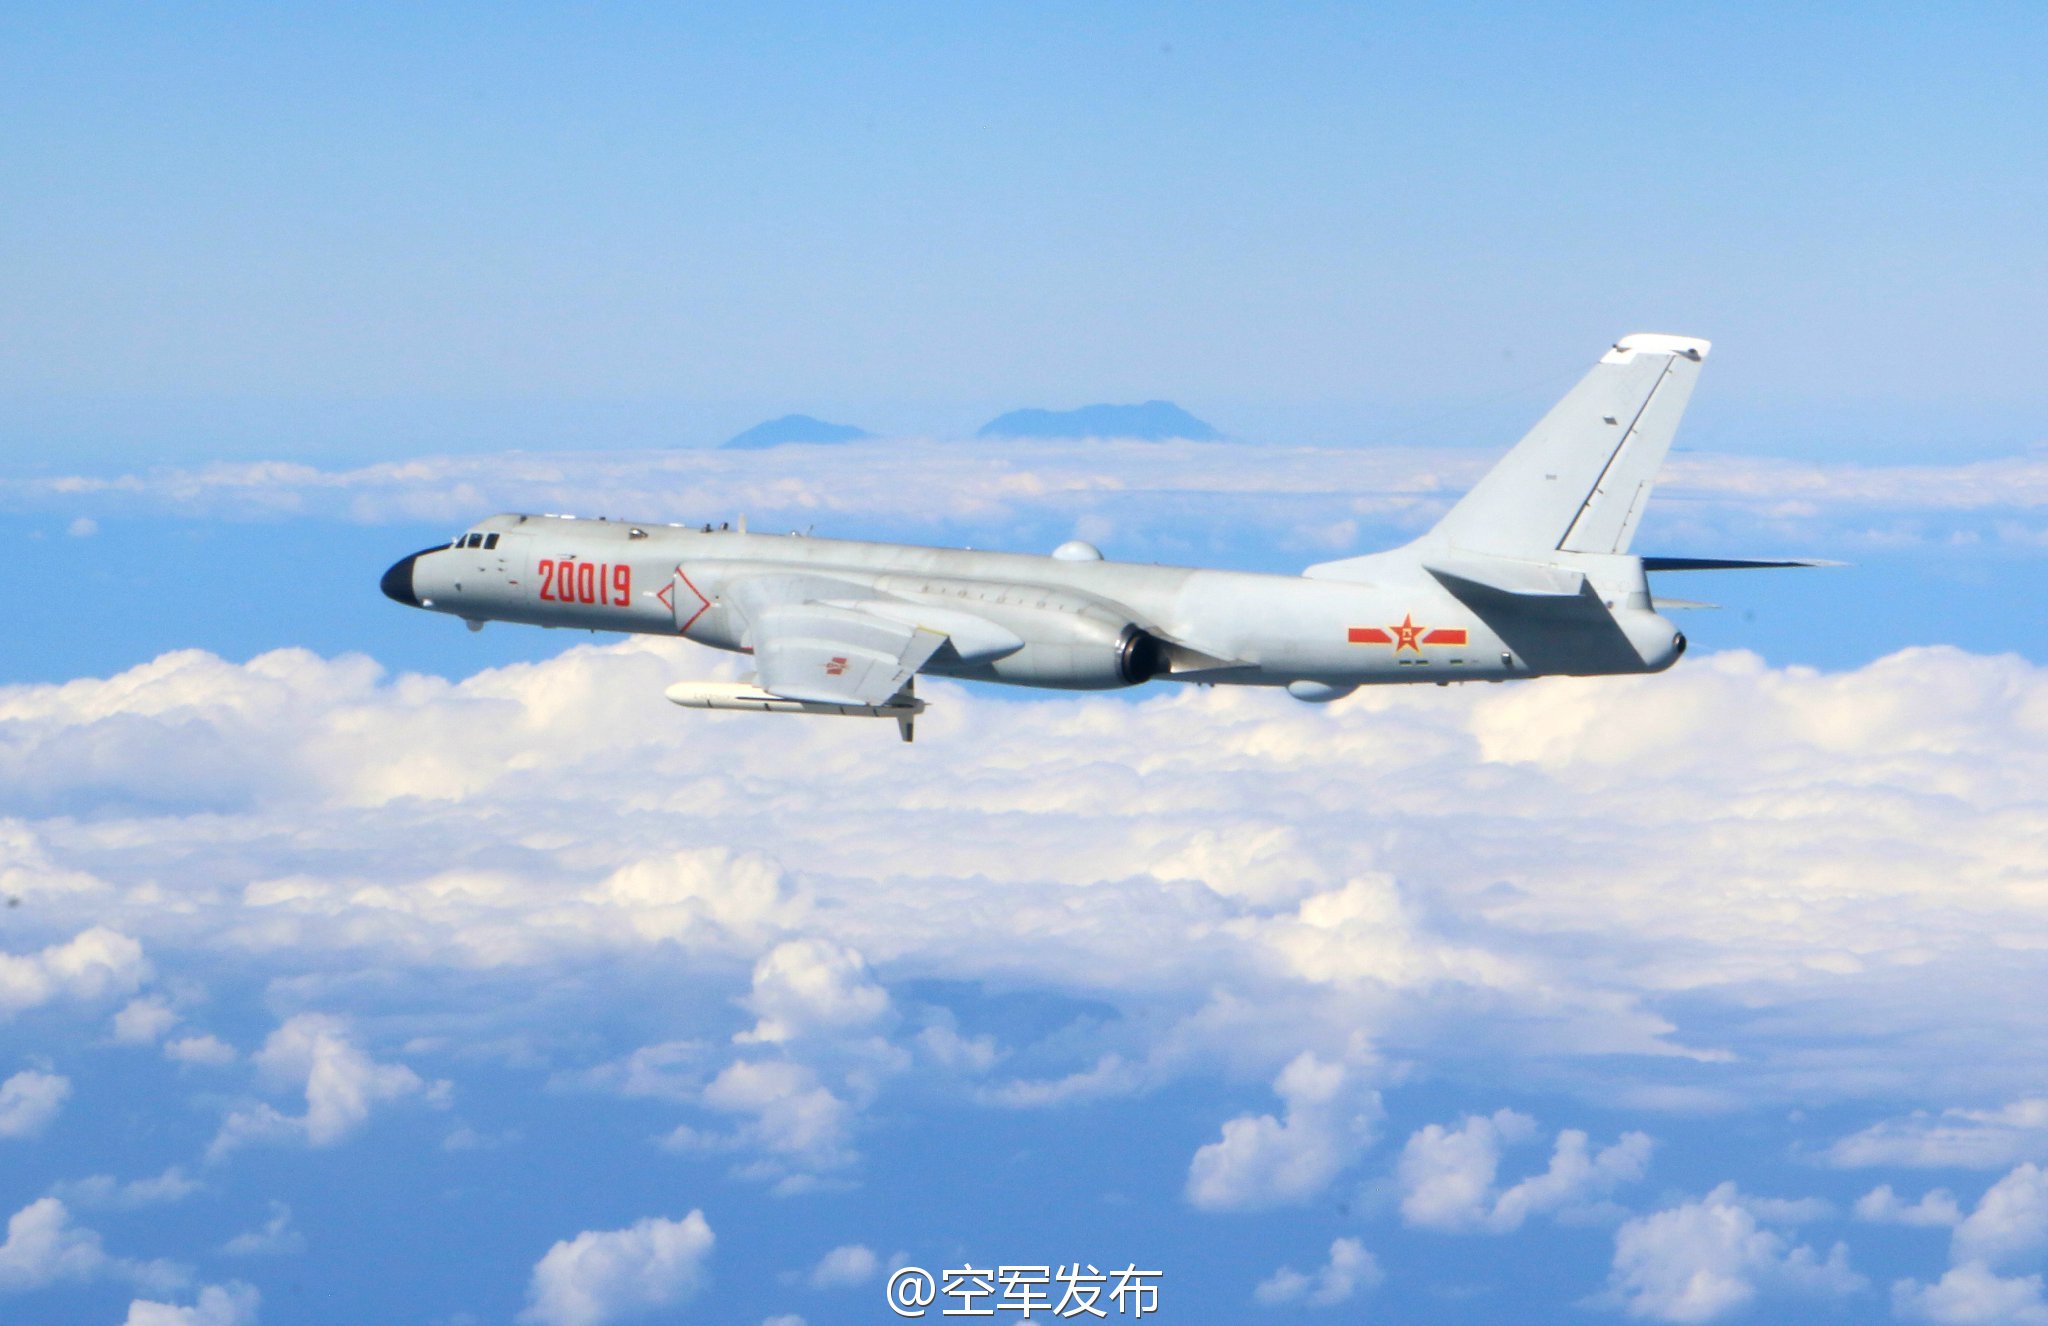 解放军军机与台湾山脉合影 台“国防部”回应